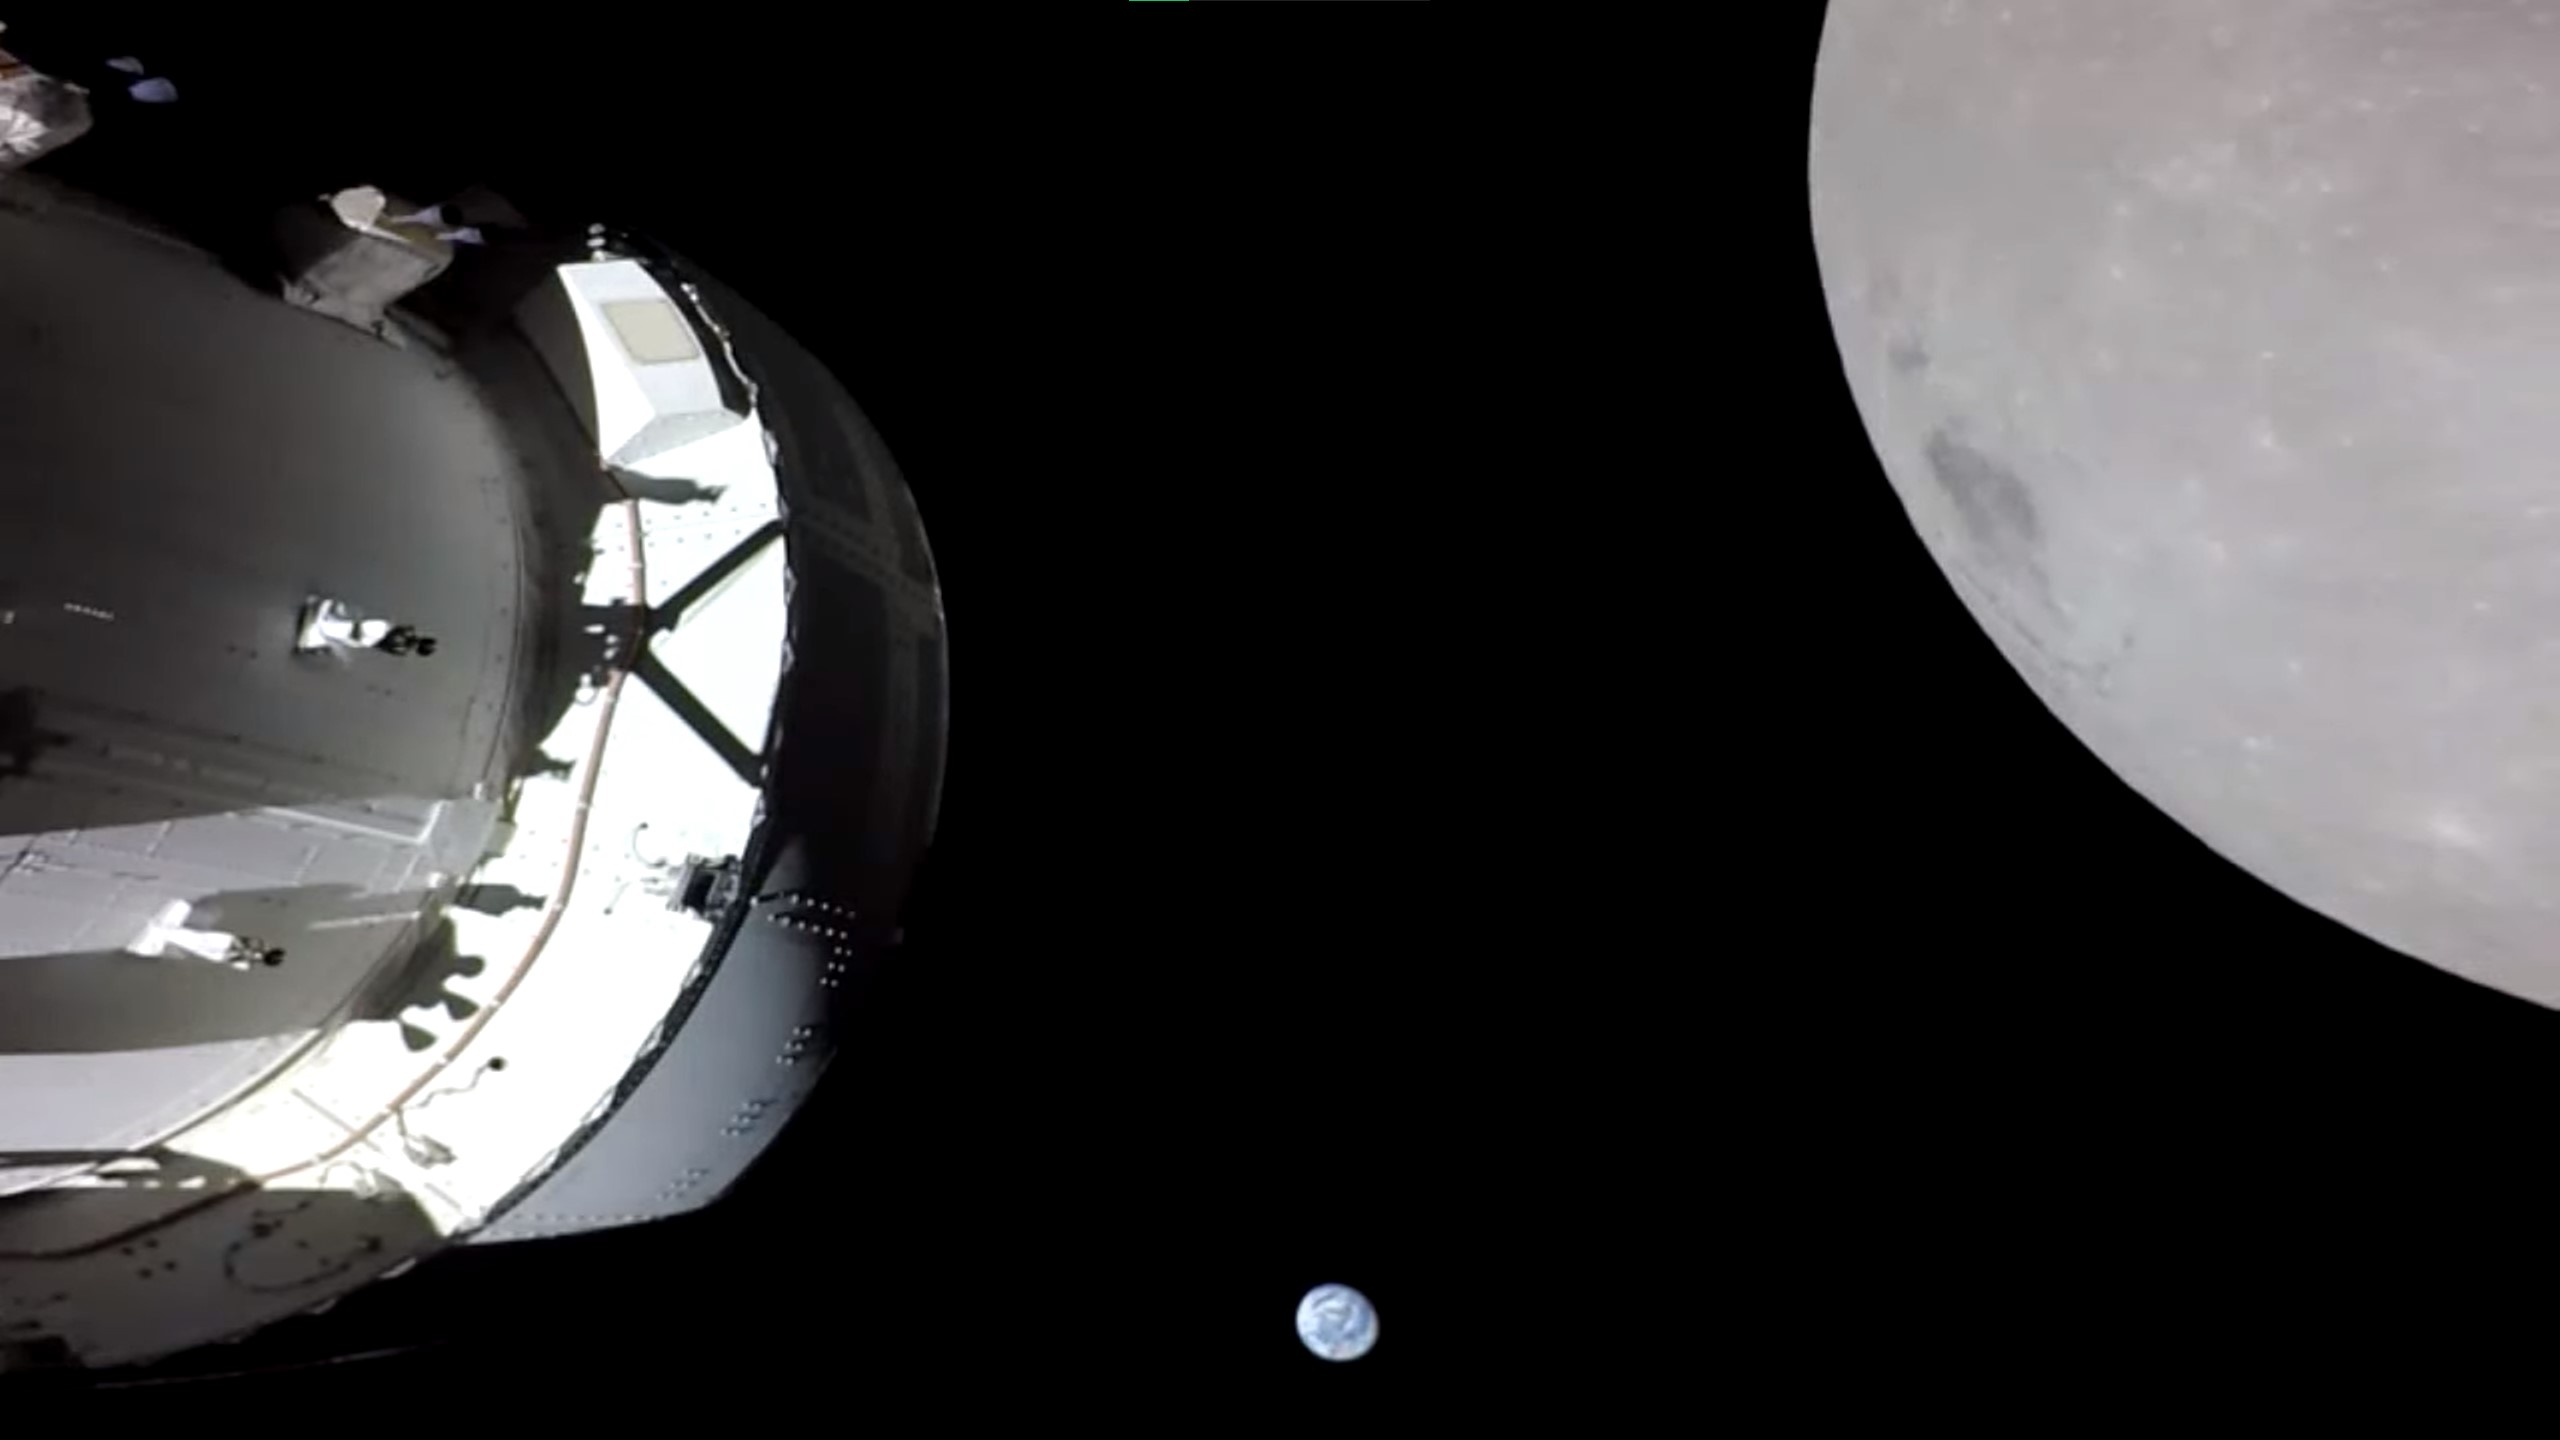 Statek kosmiczny Orion misji Artemis 1 zbliżył się do Księżyca i wykonał piękne ujęcia